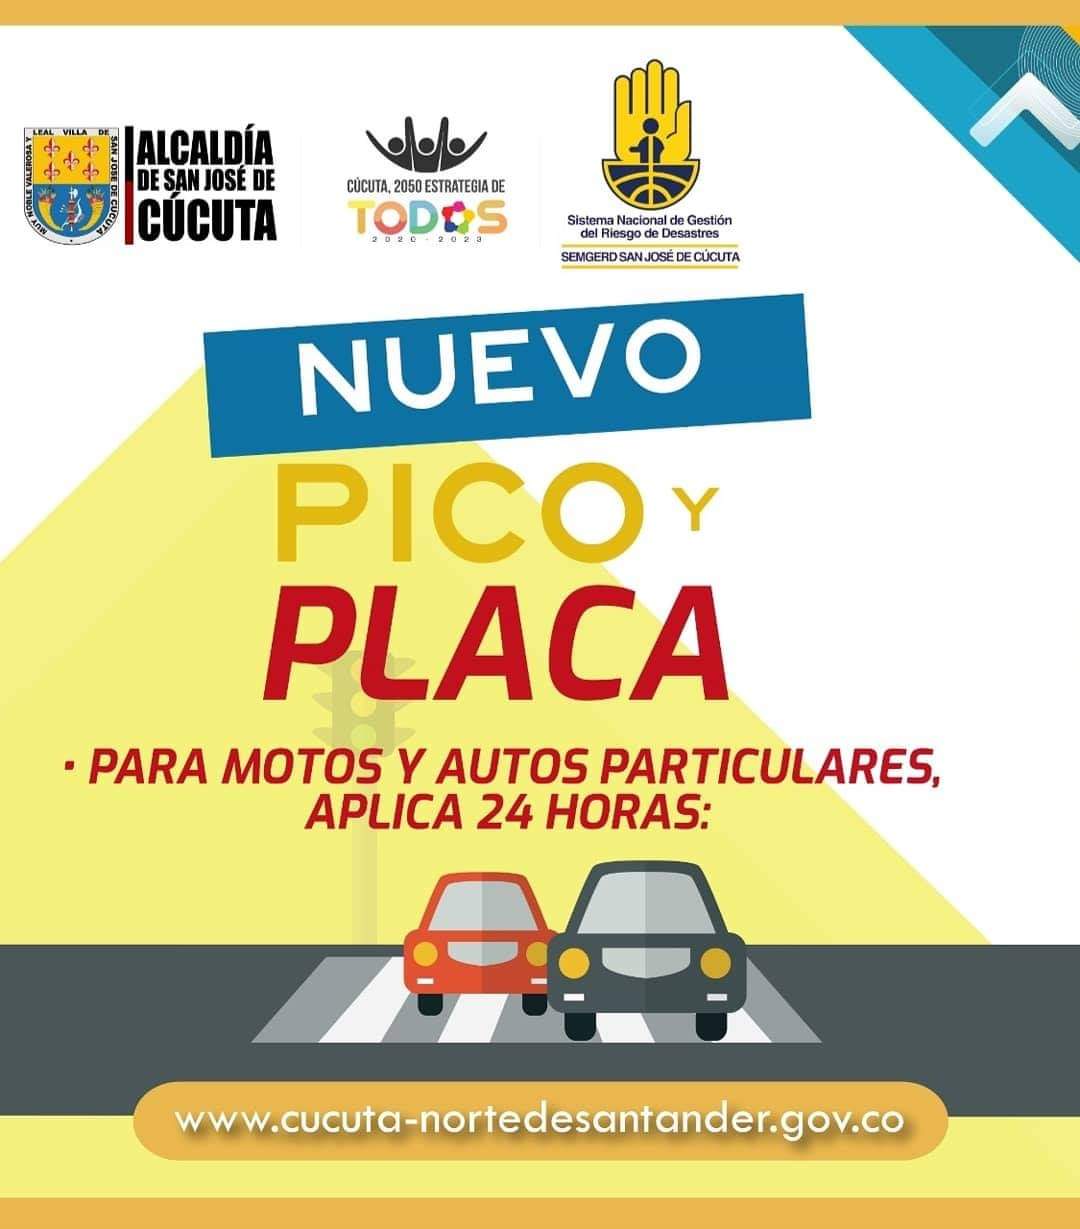 Nuevo pico y placa 2020 y toque de queda en la ciudad de Cúcuta para prevenir el Coronavirus / COVID-19